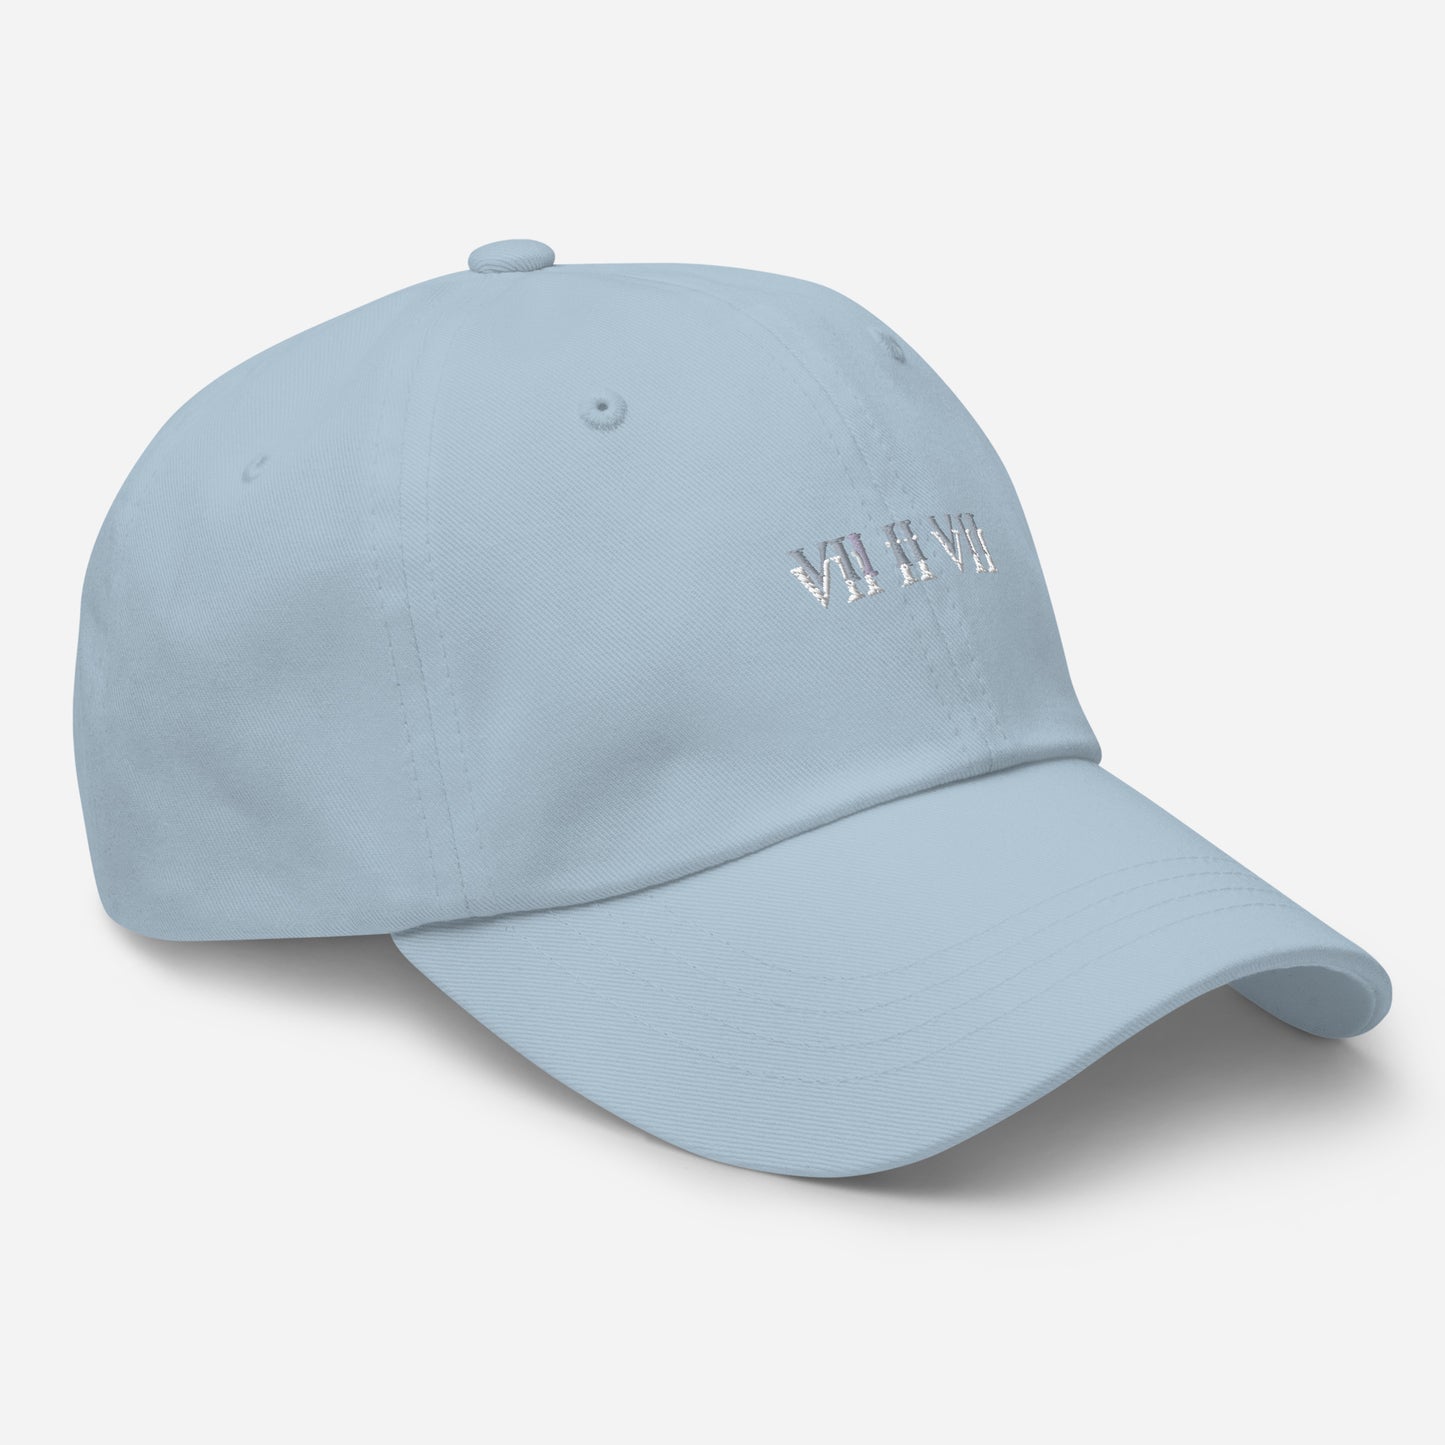 VII-II-VII Original Hat